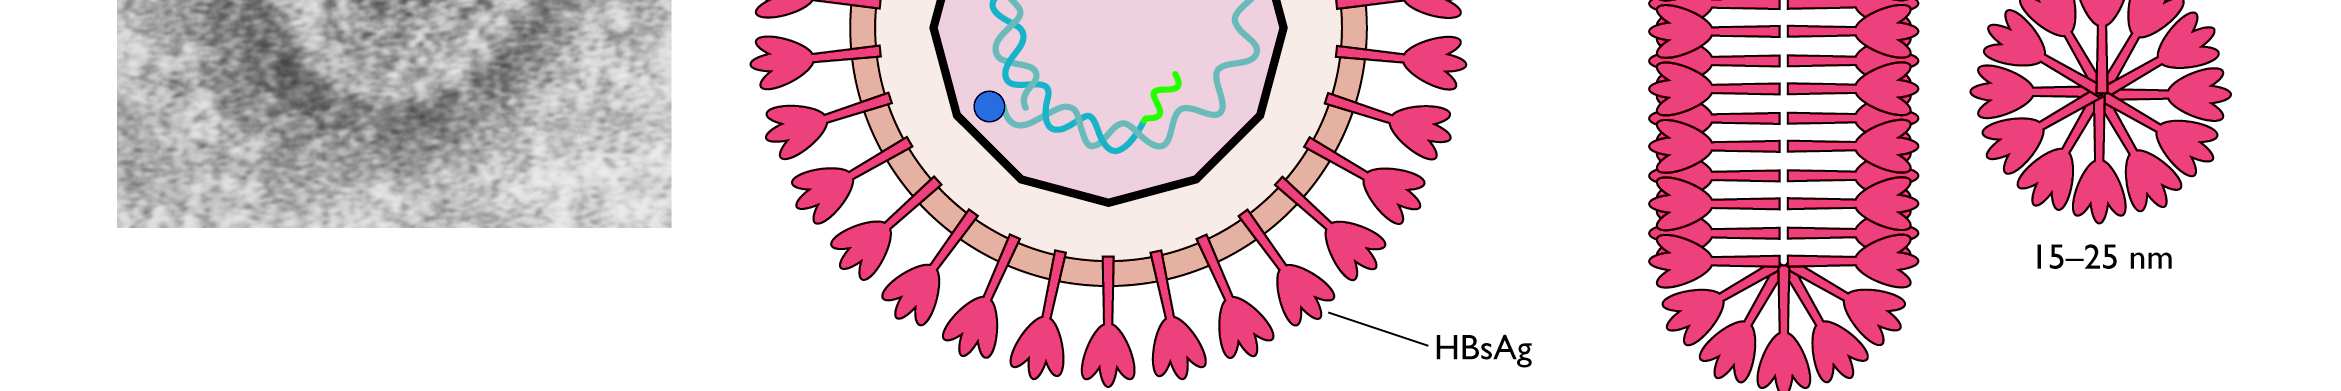 Génome à ADN bicaténaire La plupart des virus à ADN monocaténaire Parvoviridae et Circoviridae Taille: 3,2 kbp (Virus de l Hépatite B), 5,7 kb (Parvoviridae) 235 kbp (Cytomégalovirus) 4 gènes pour le